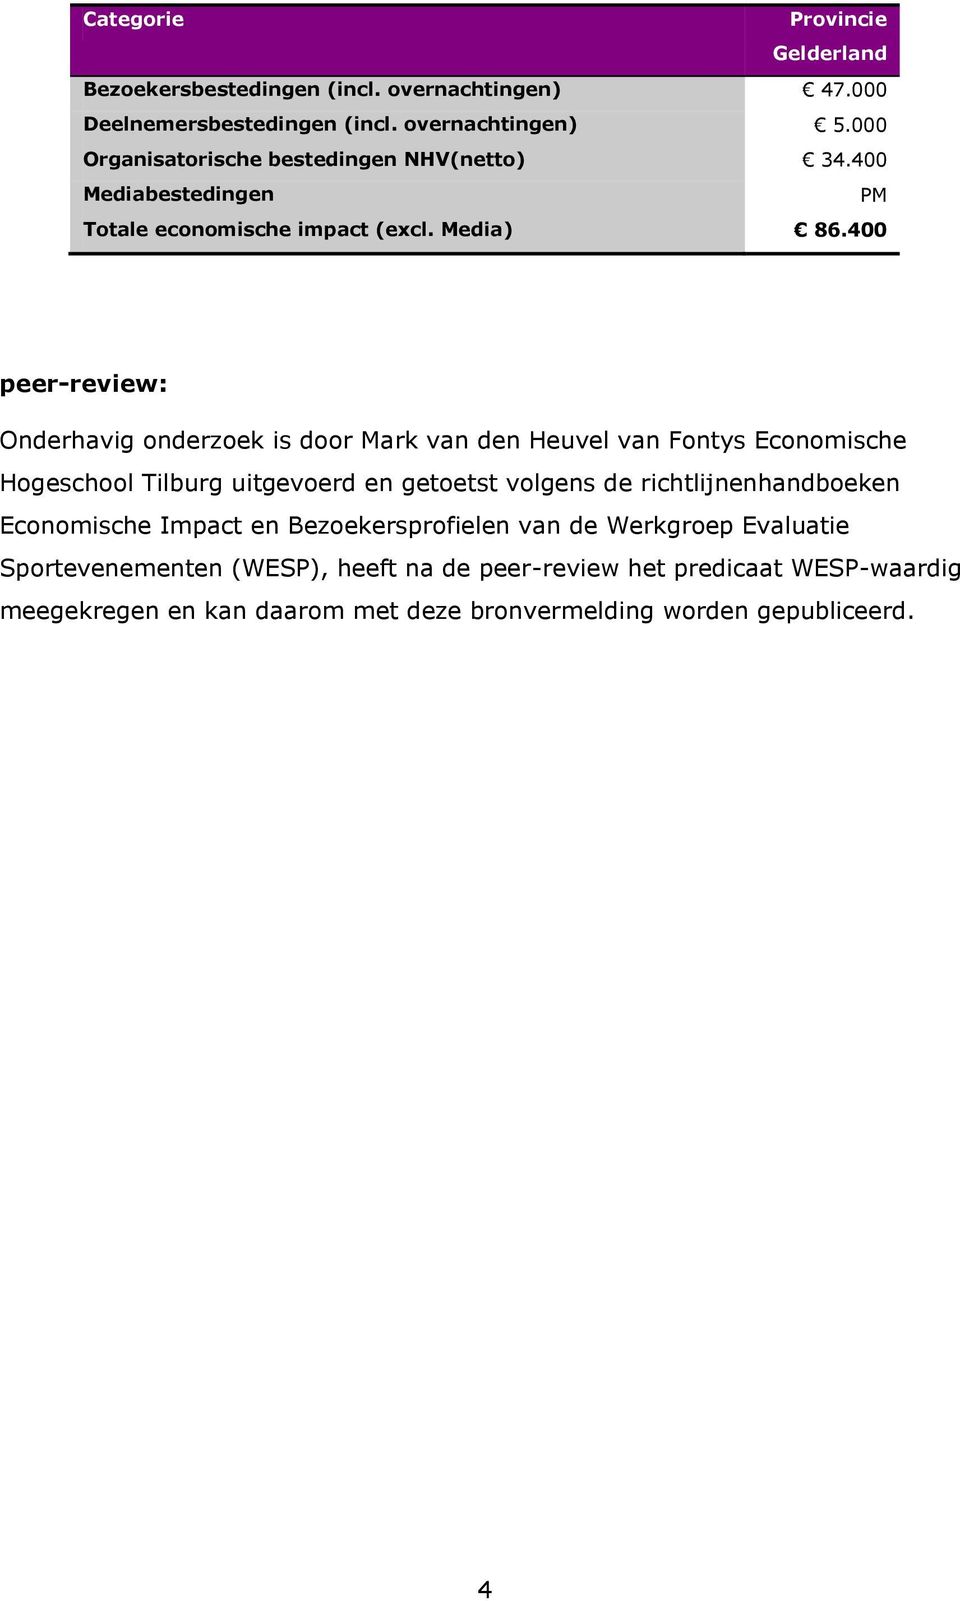 400 peer-review: Onderhavig onderzoek is door Mark van den Heuvel van Fontys Economische Hogeschool Tilburg uitgevoerd en getoetst volgens de